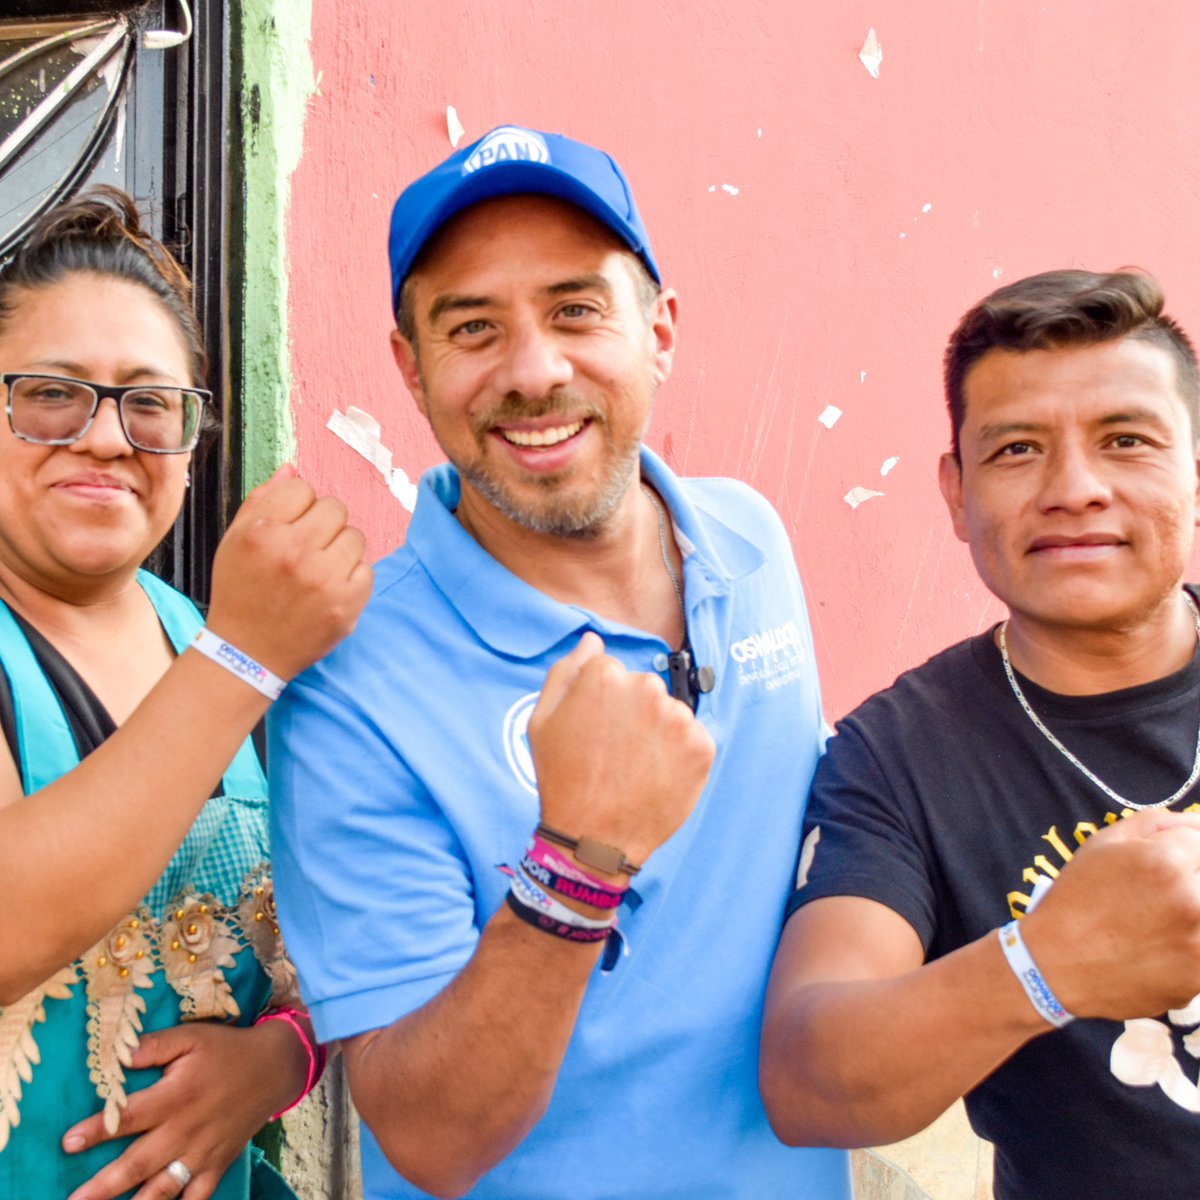 Gracias San Baltazar 👏🏻 caminando por las calles junto a @marioriestra y @CaroBeauregard pudimos percibir el gran cariño y recibimiento de la gente. 

No cabe duda que el próximo 2 de junio ¡vamos a ganar 👊🏻! 

 #RumboSeguro #Puebla #Diputado #Distrito17